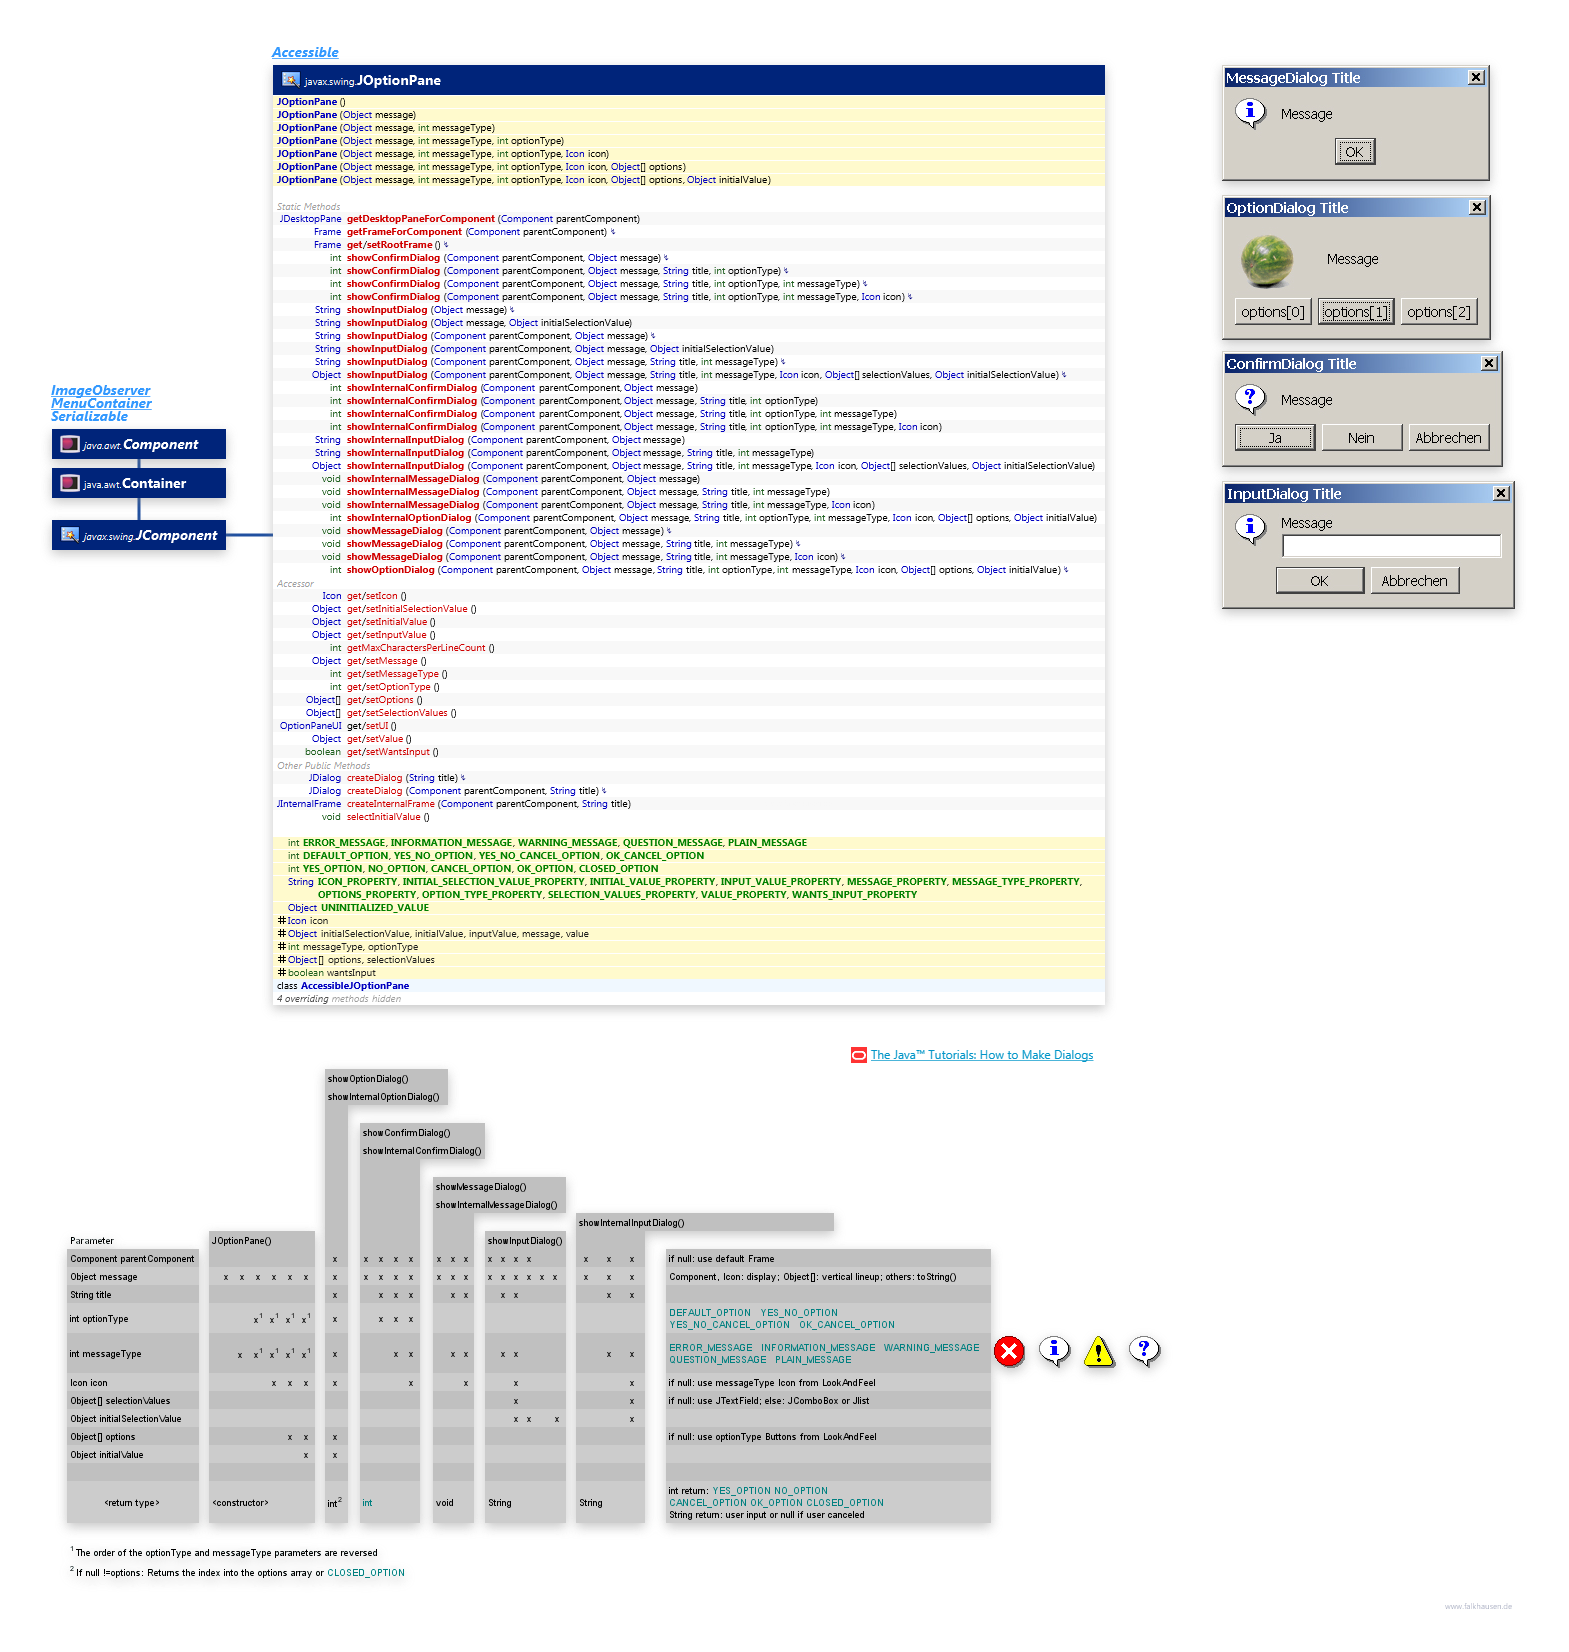 JOptionPane class diagram and api documentation for Java 10